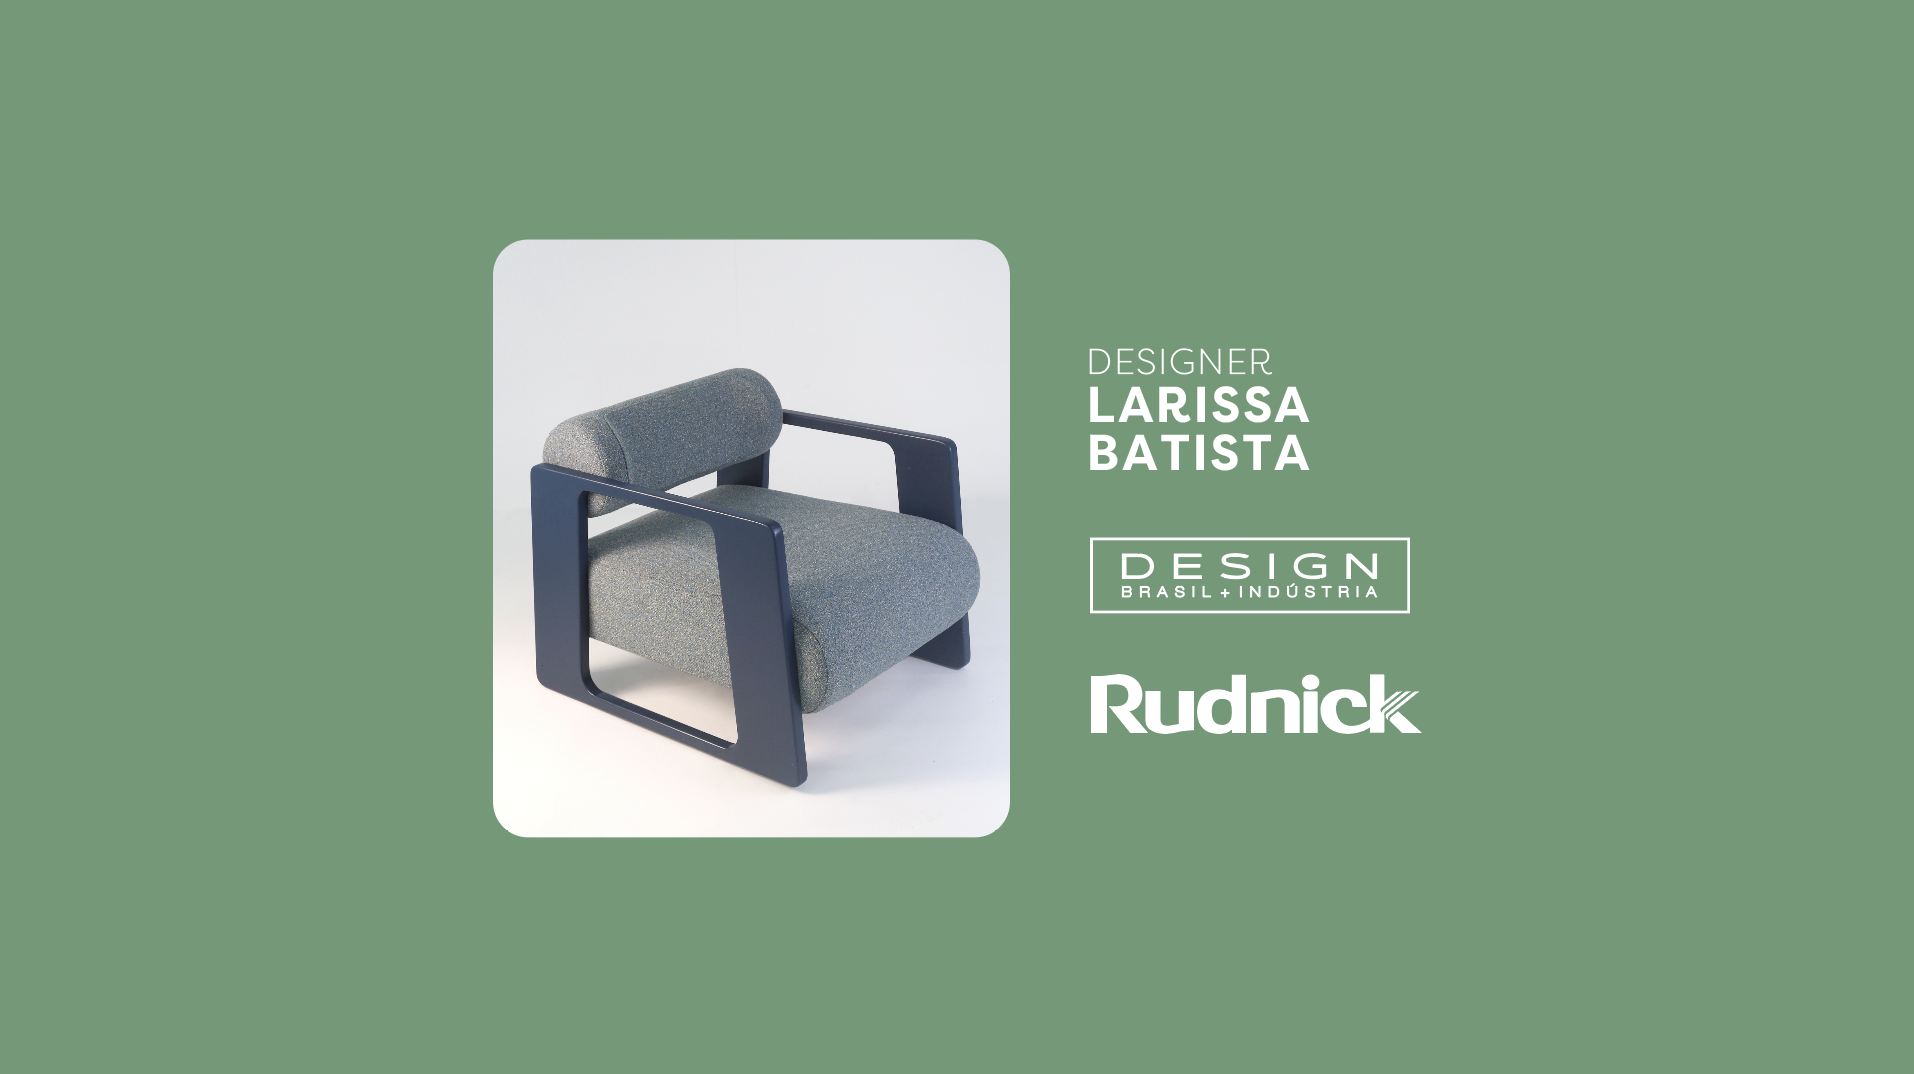 Design + Indústria: Larissa Batista e Grupo Rudnick convergem elegância e tradição